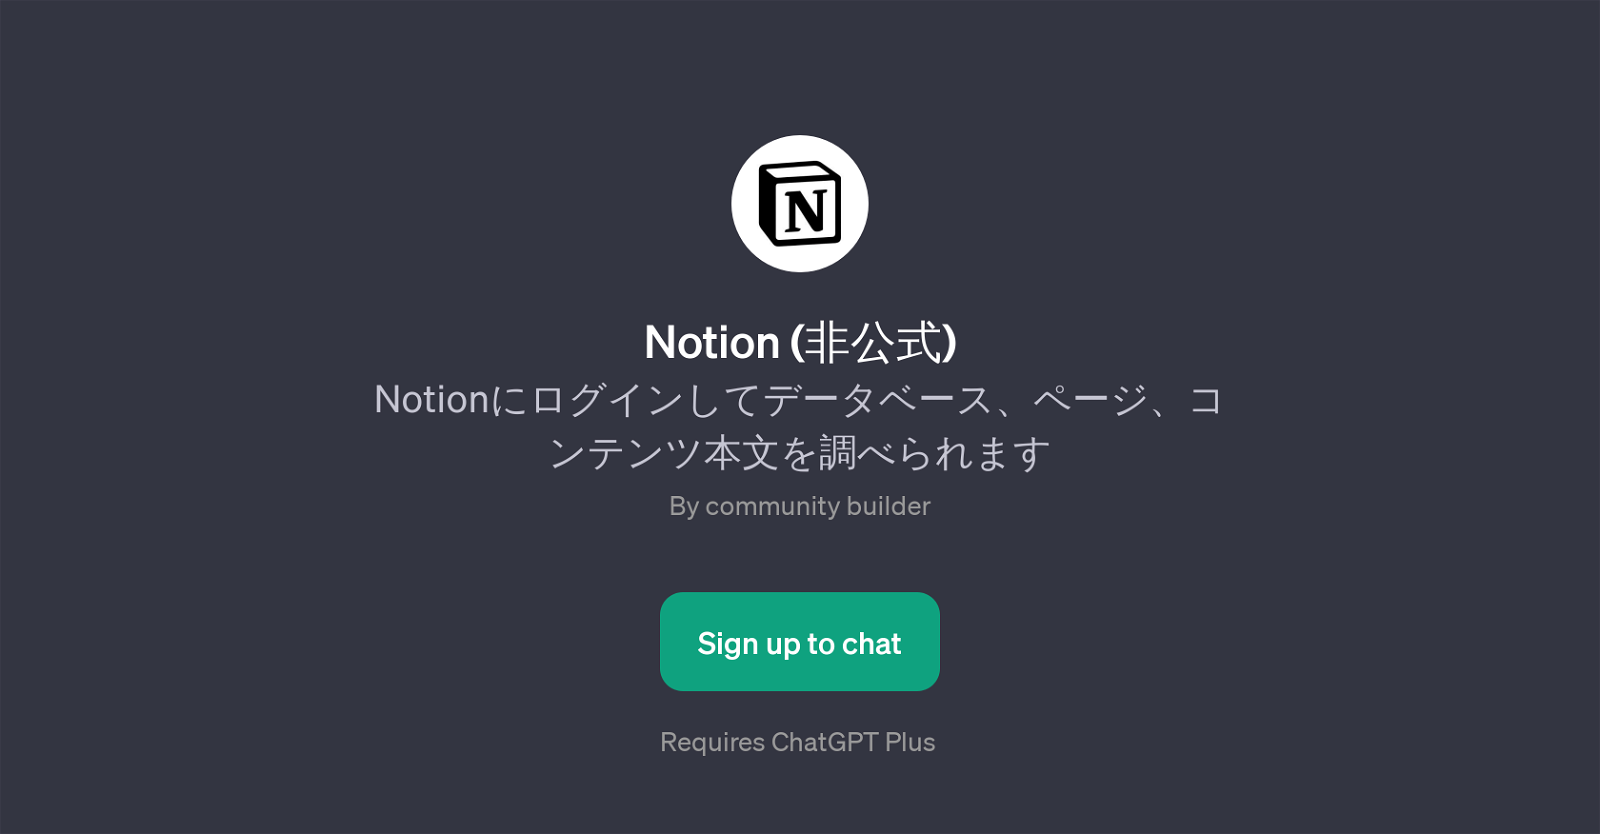 Notion () website